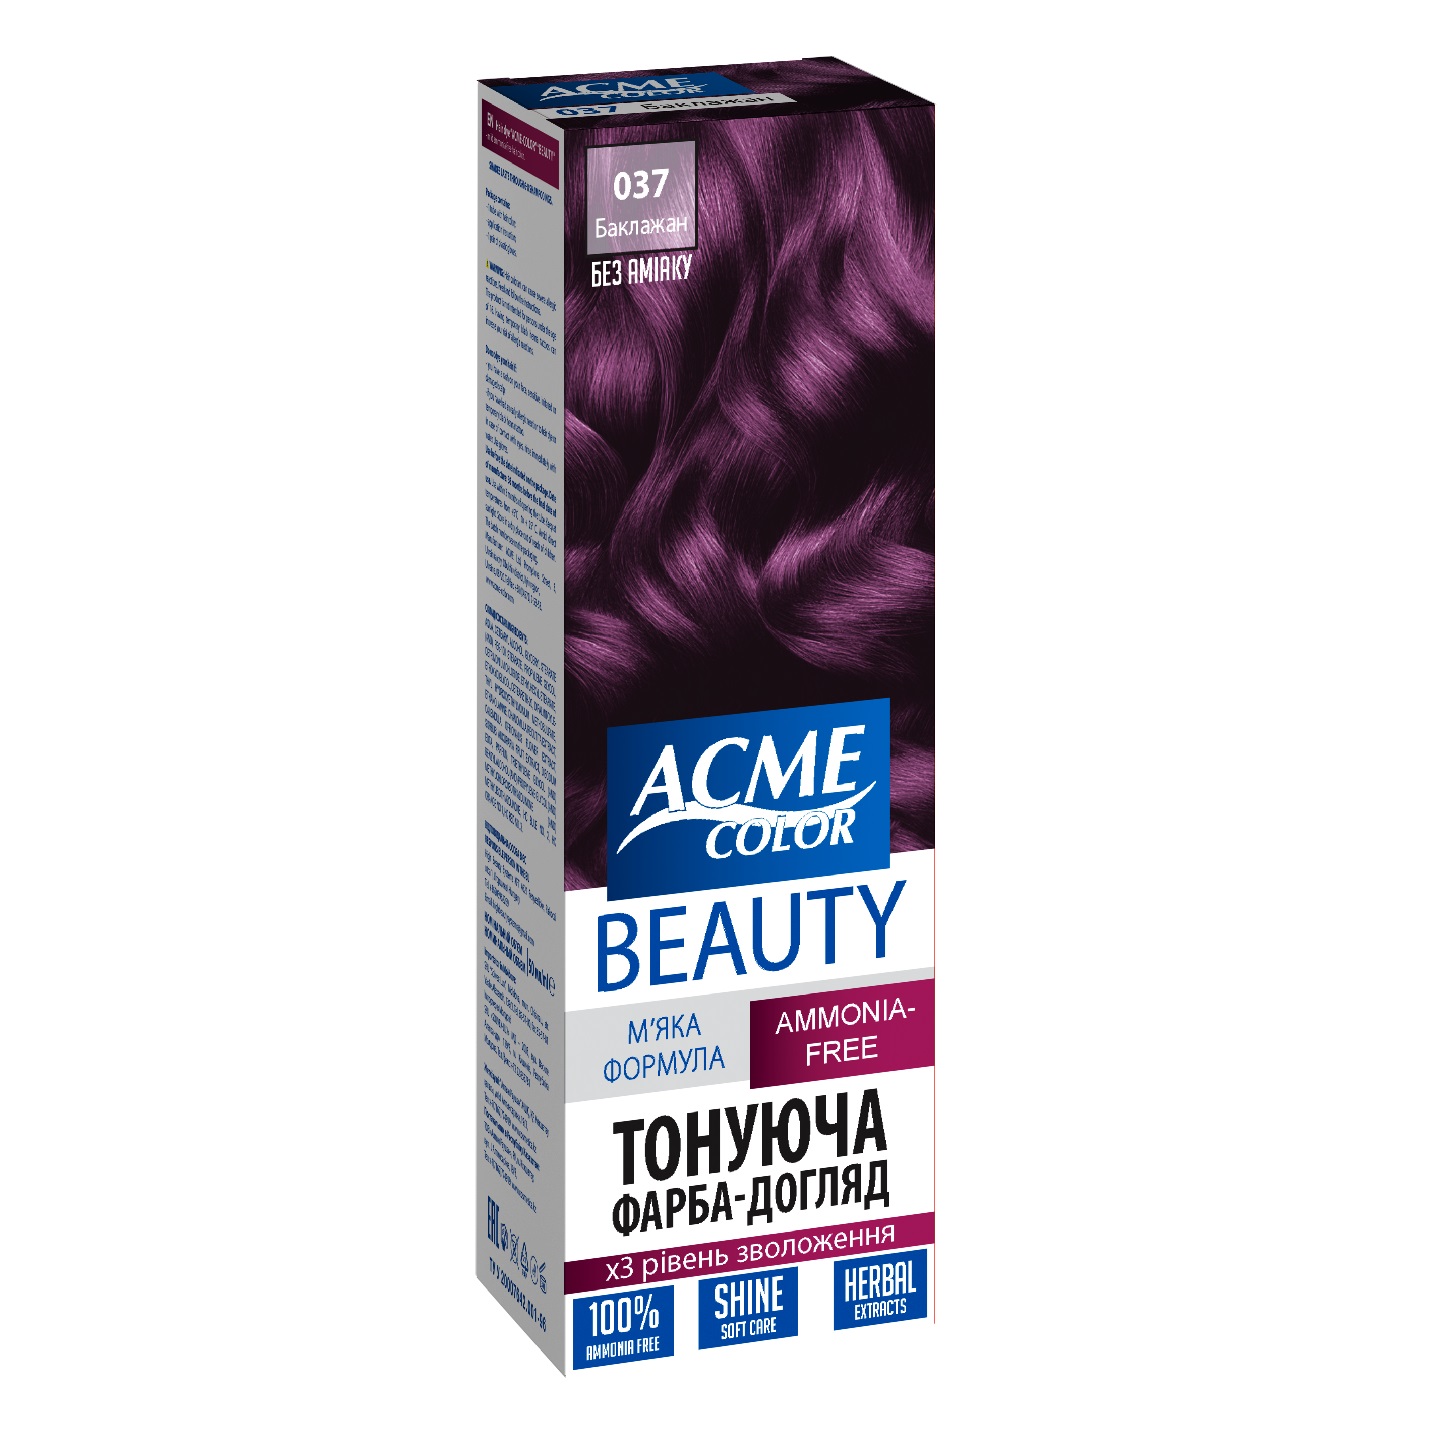 Гель-фарба для волосся Acme-color Beauty, відтінок 037 (Баклажан), 69 г - фото 1